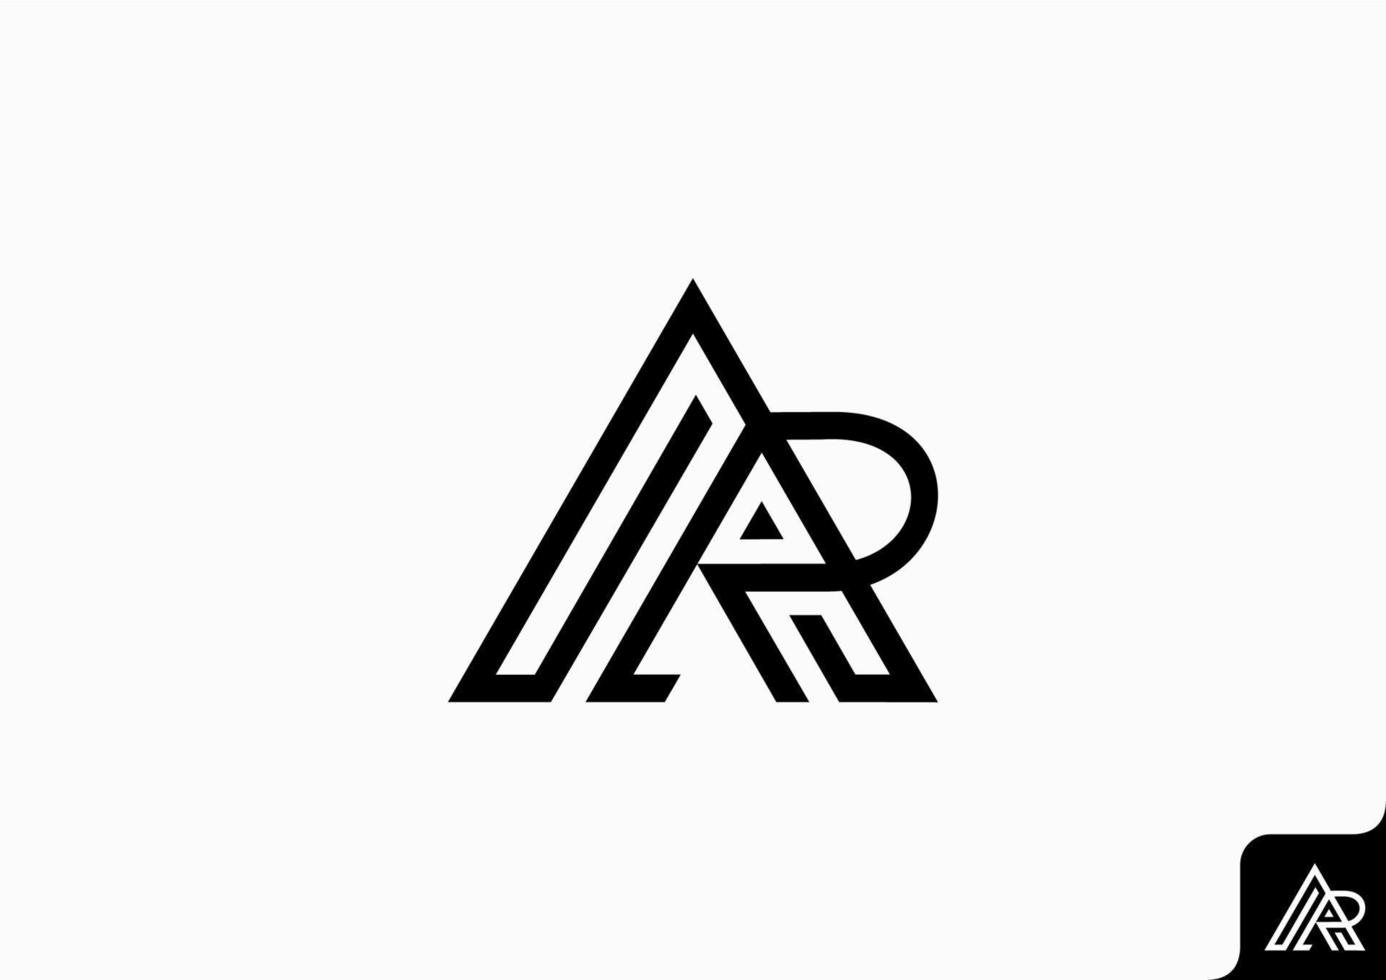 brev ar ra ikon logotyp platt minimalistisk färgrik svart och vit vektor